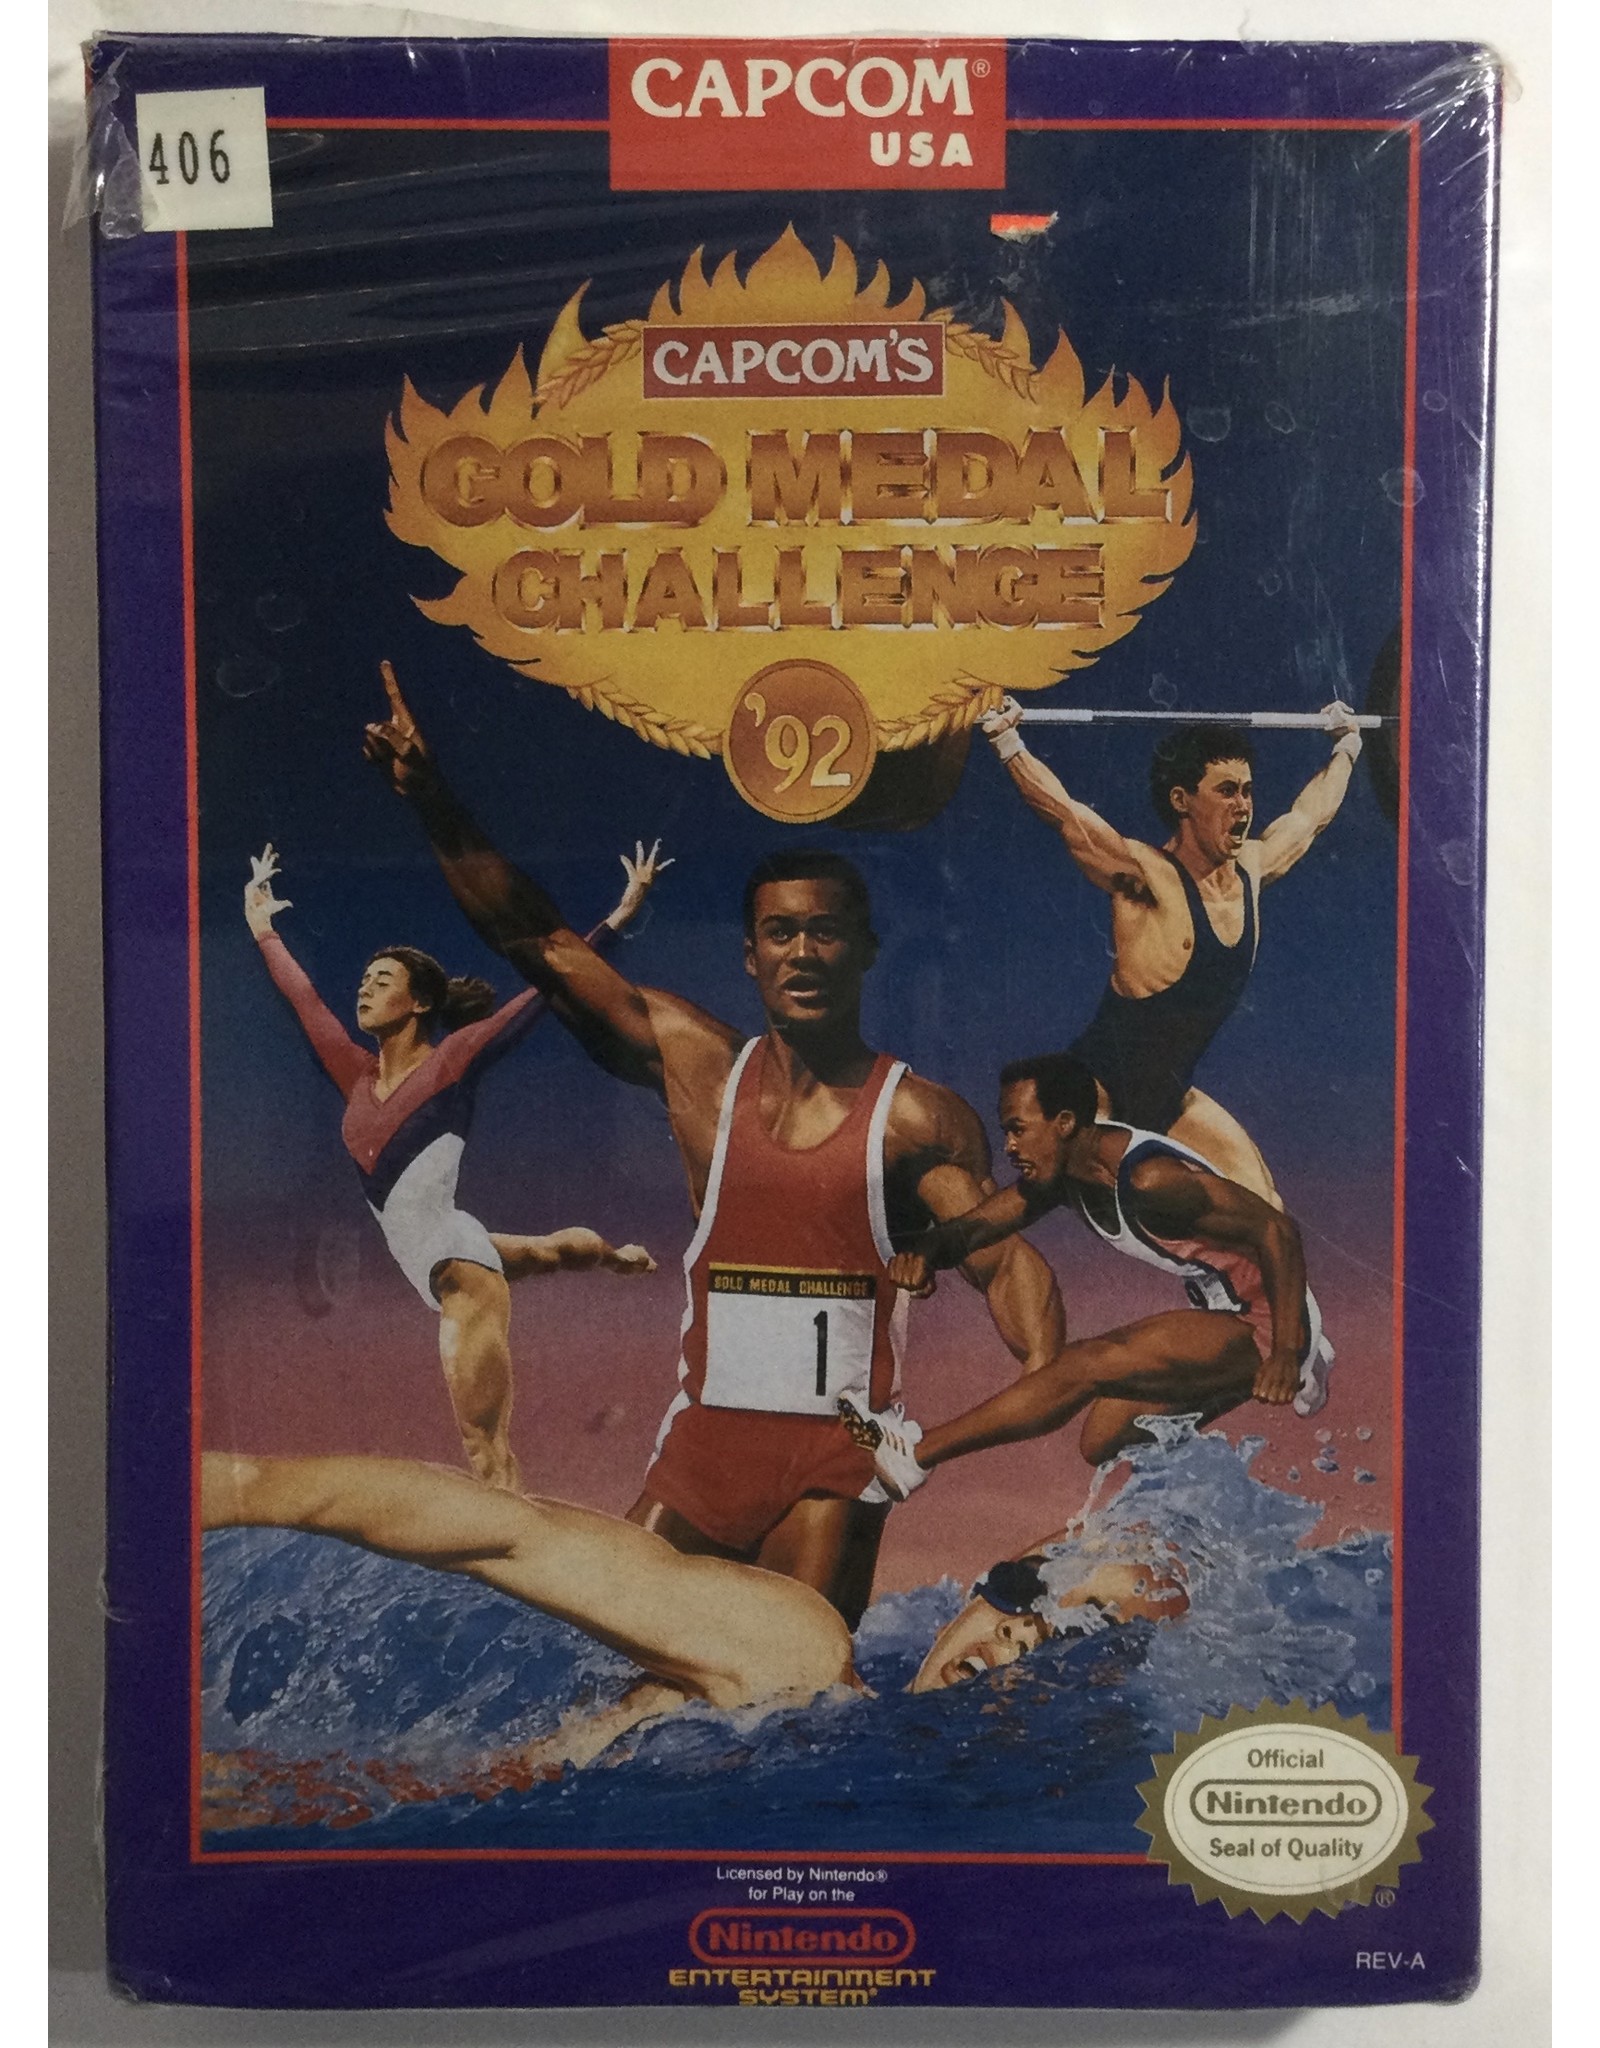 CAPCOM Gold Medal Challenge '92